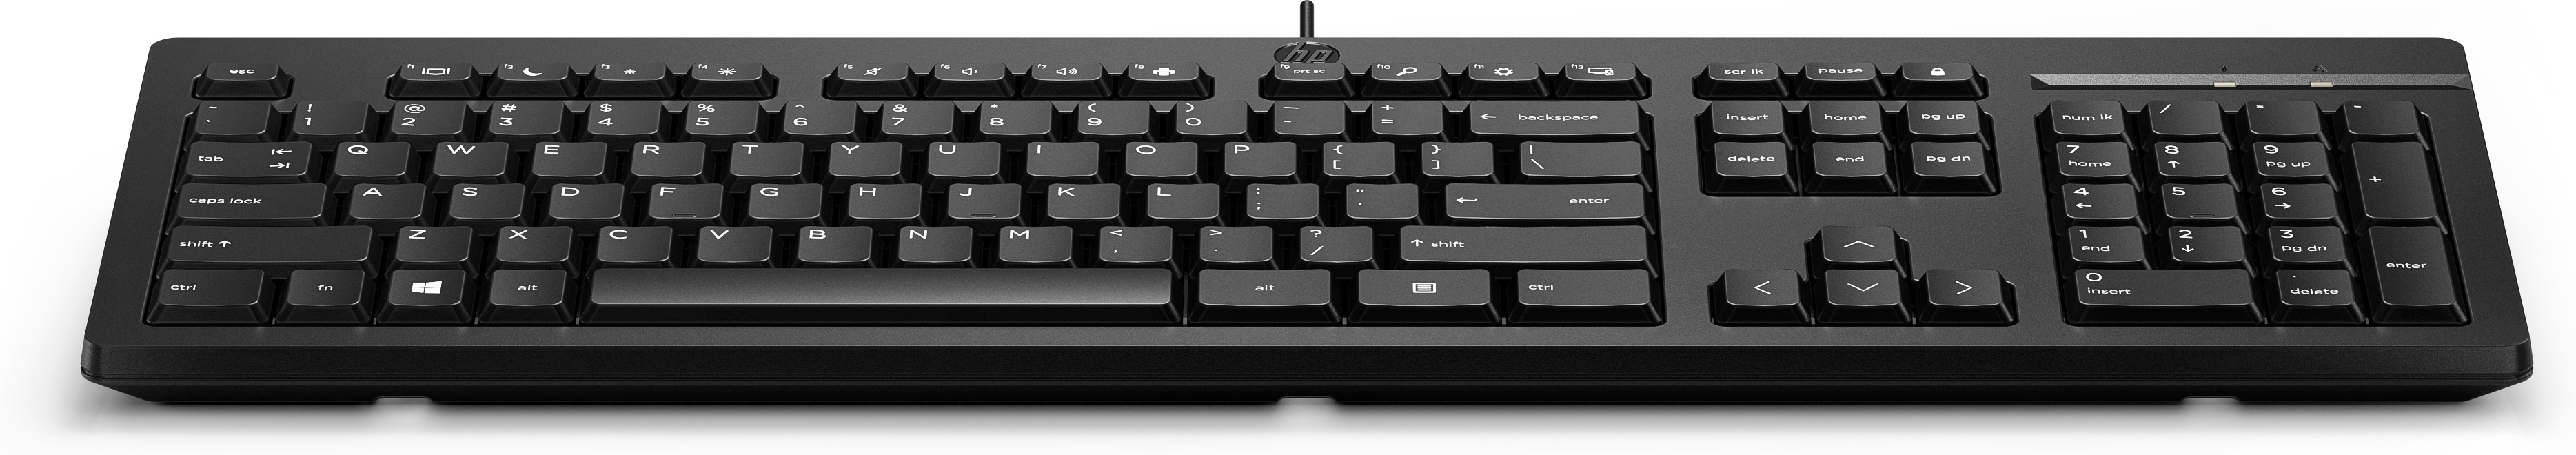 Hp Hp 125 G8 Usb Keyboard Us Int Black (w1) 266c9aa#akd - xep01